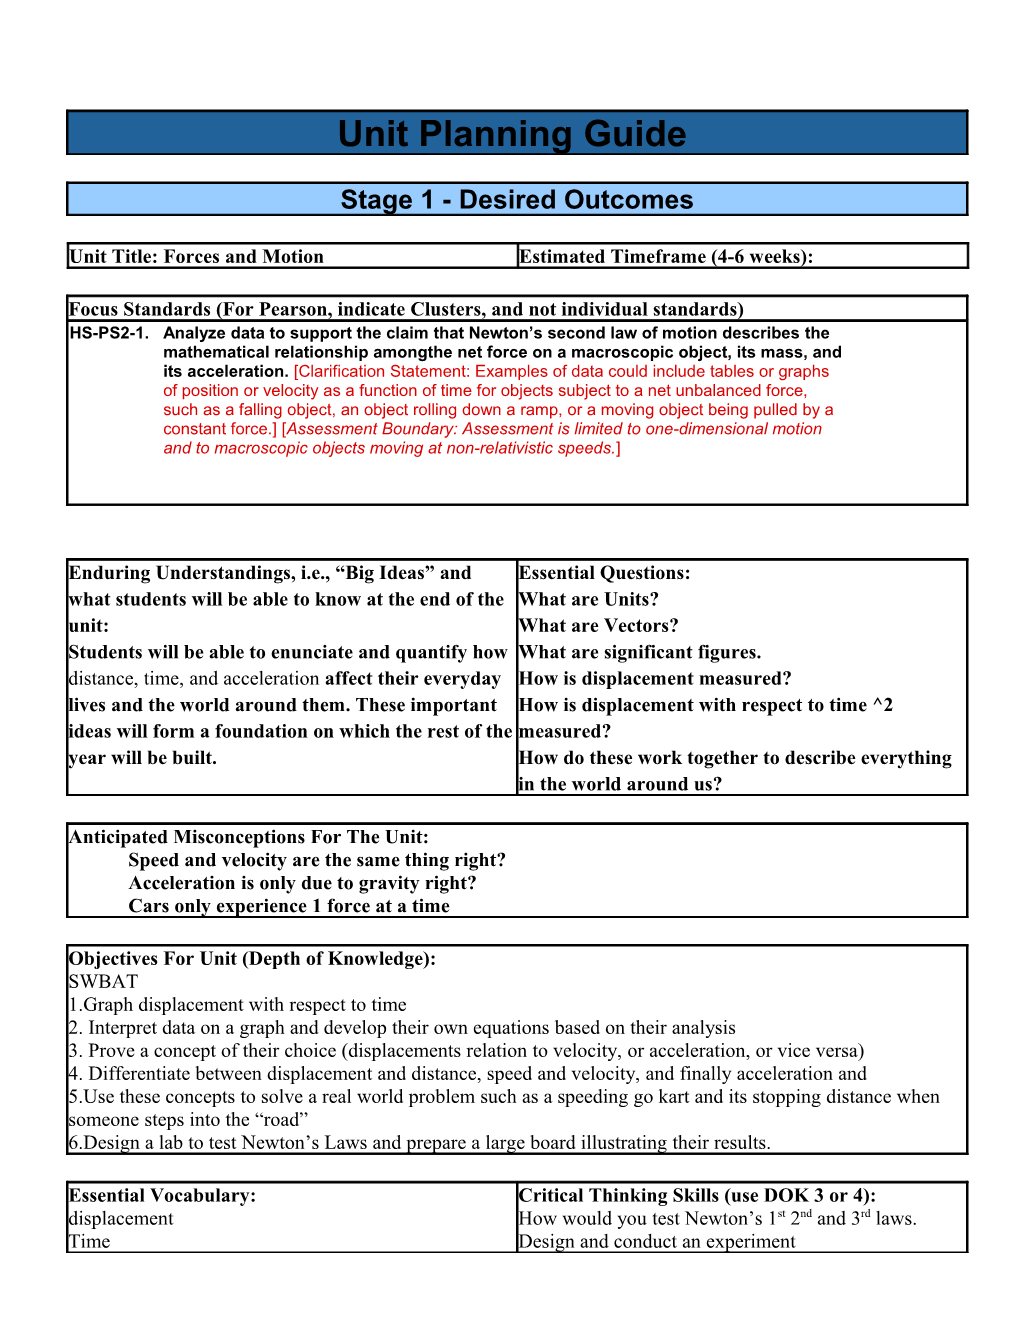 July 2013 BLAST PD Backward Design Planning Guide